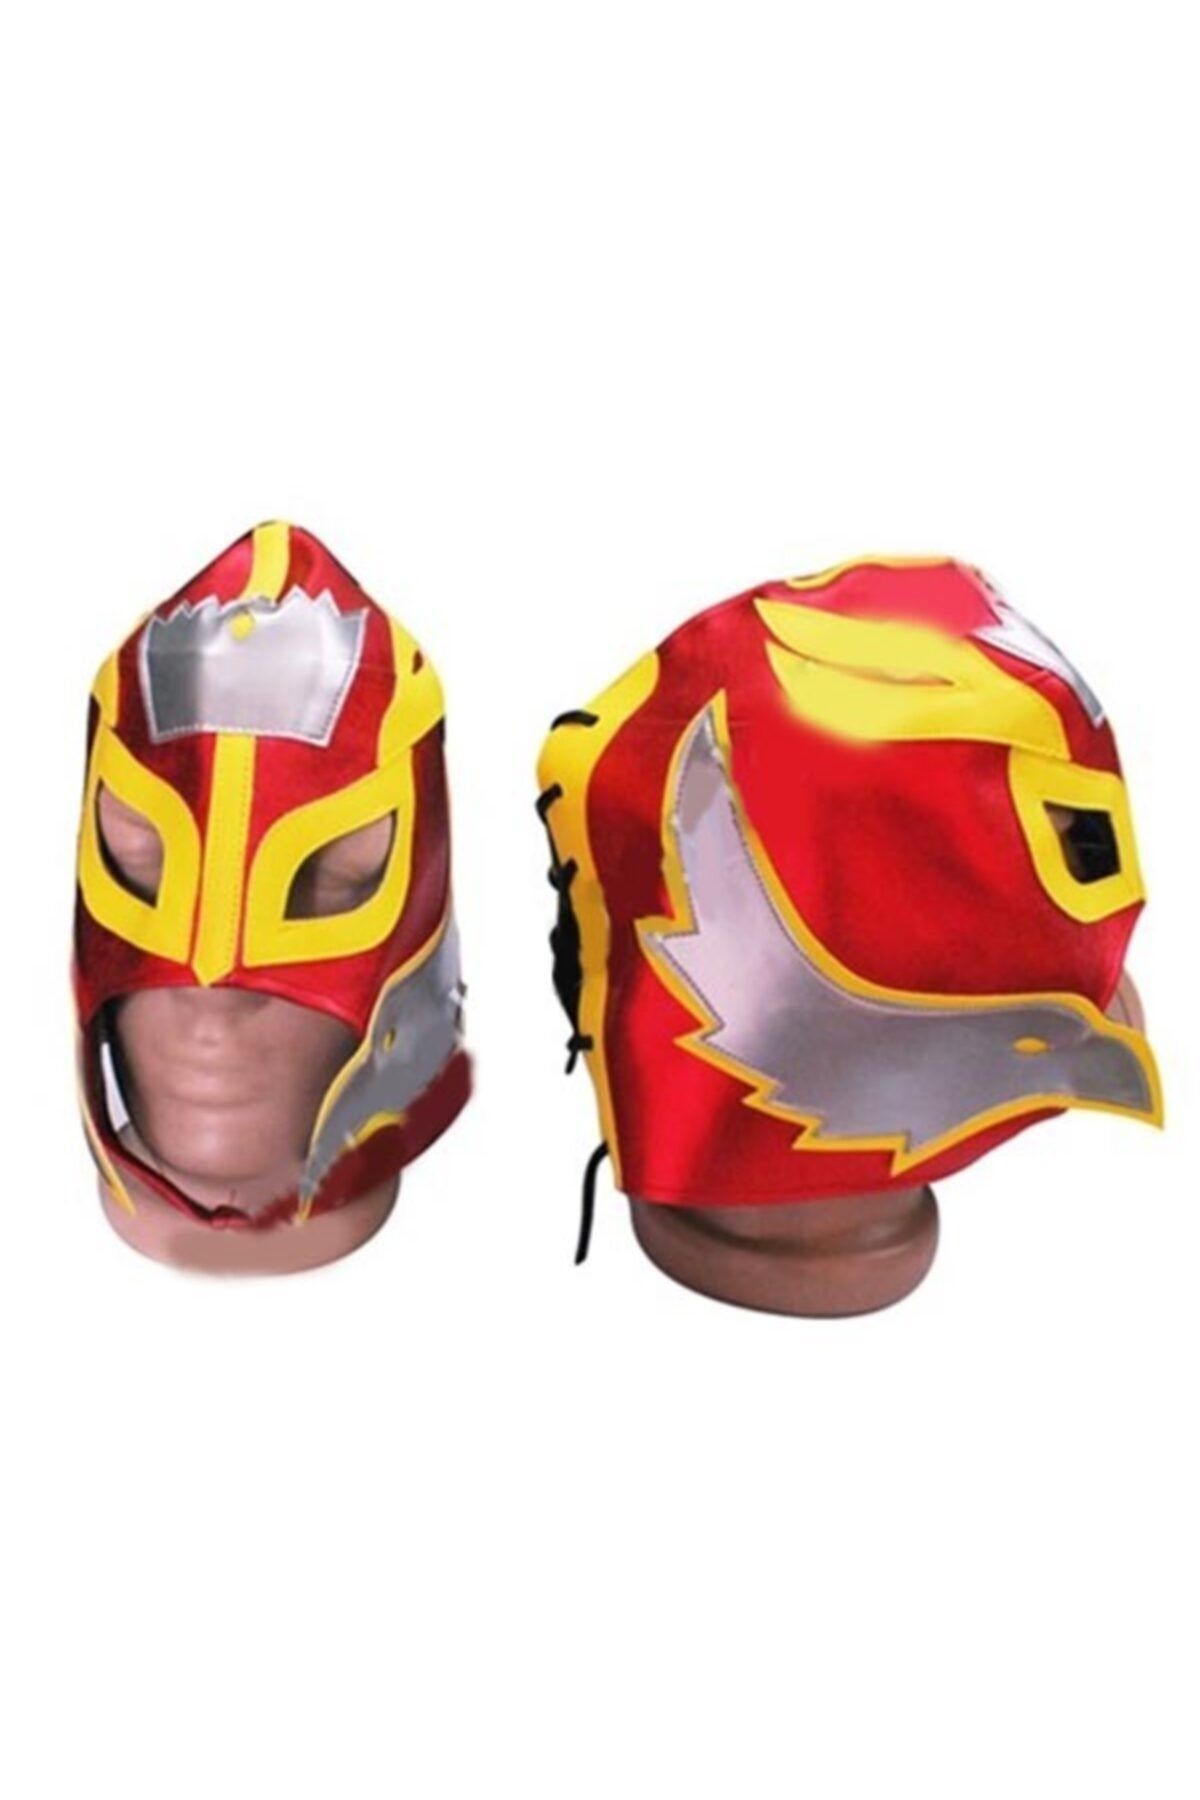 Ufuk Şaka Oyunları Merkezi Smackdown Rey Mysterio Maske ( Kırmızı-sarı Amerikan Güreşçi Maske